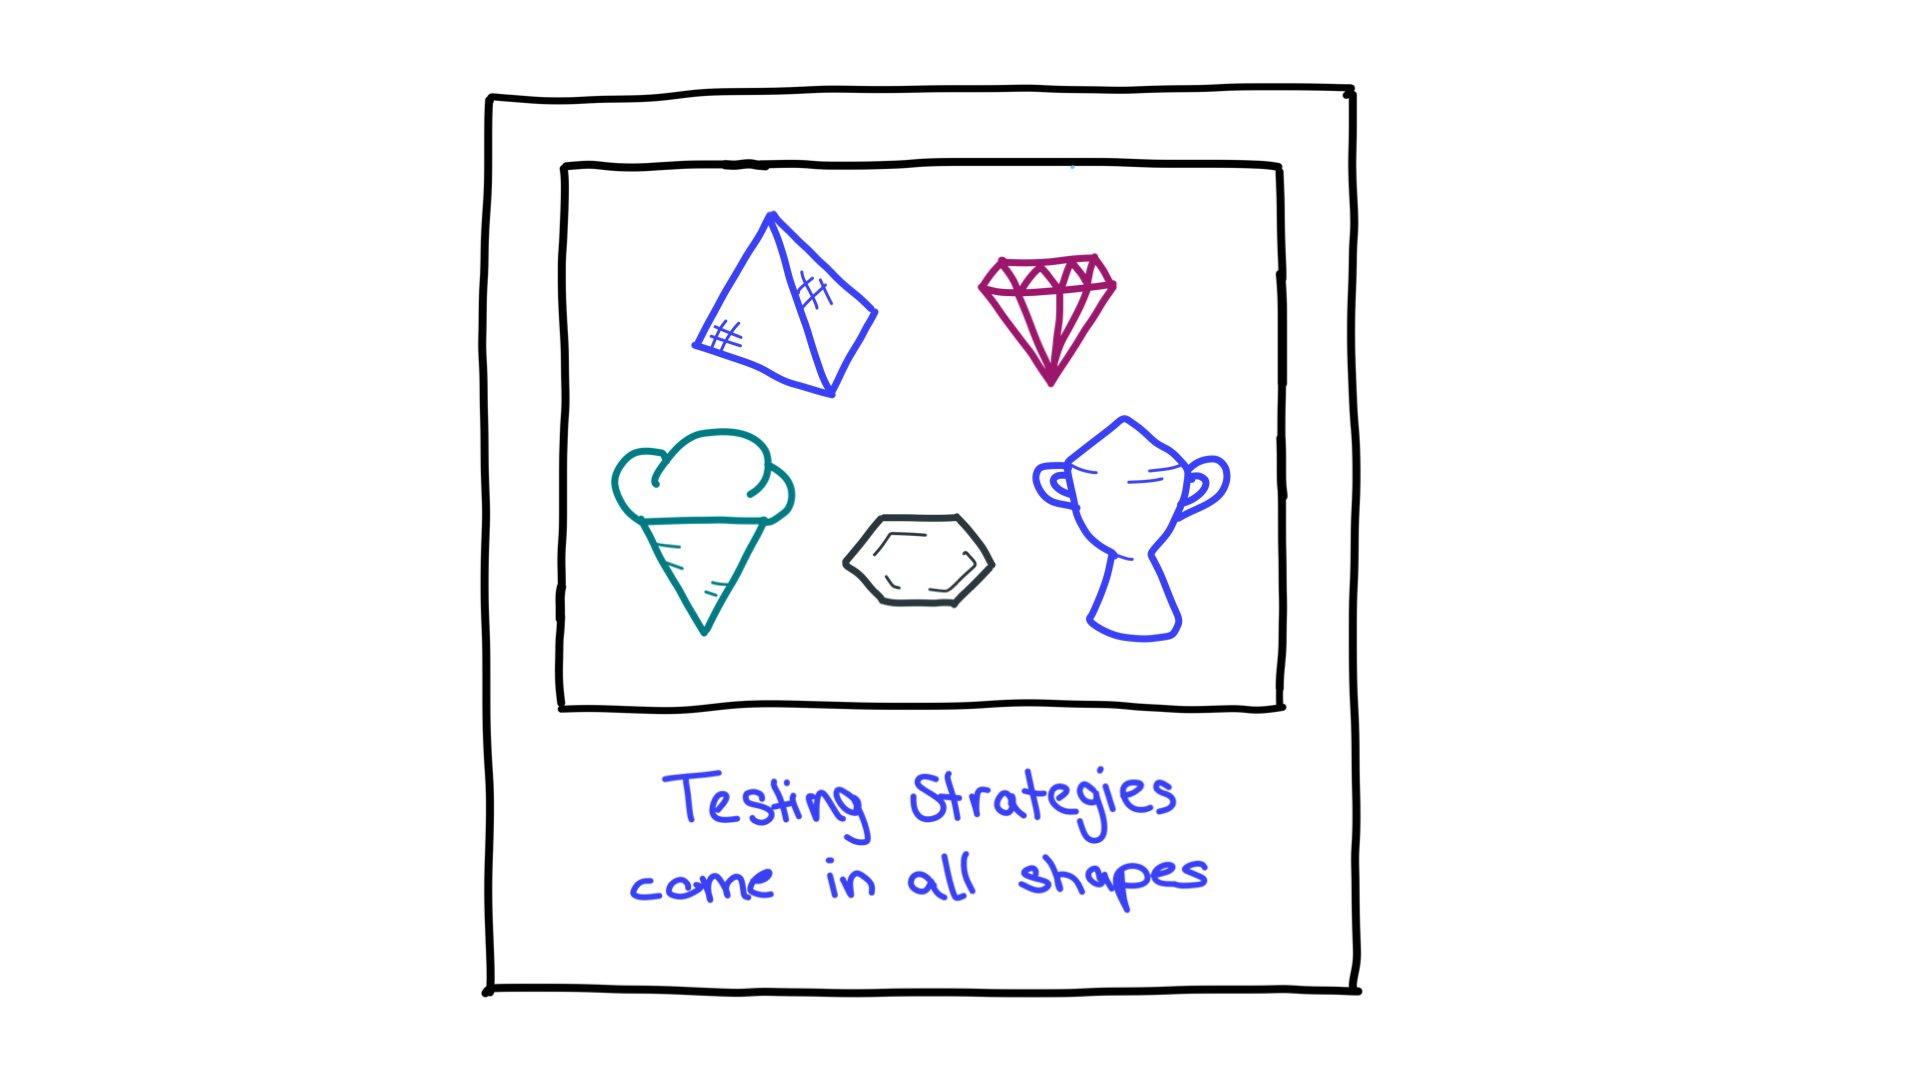 چند نمونه از آزمایش اشکال استراتژی: یک هرم، یک الماس تراش خورده، یک مخروط بستنی، یک شش ضلعی و یک جایزه.